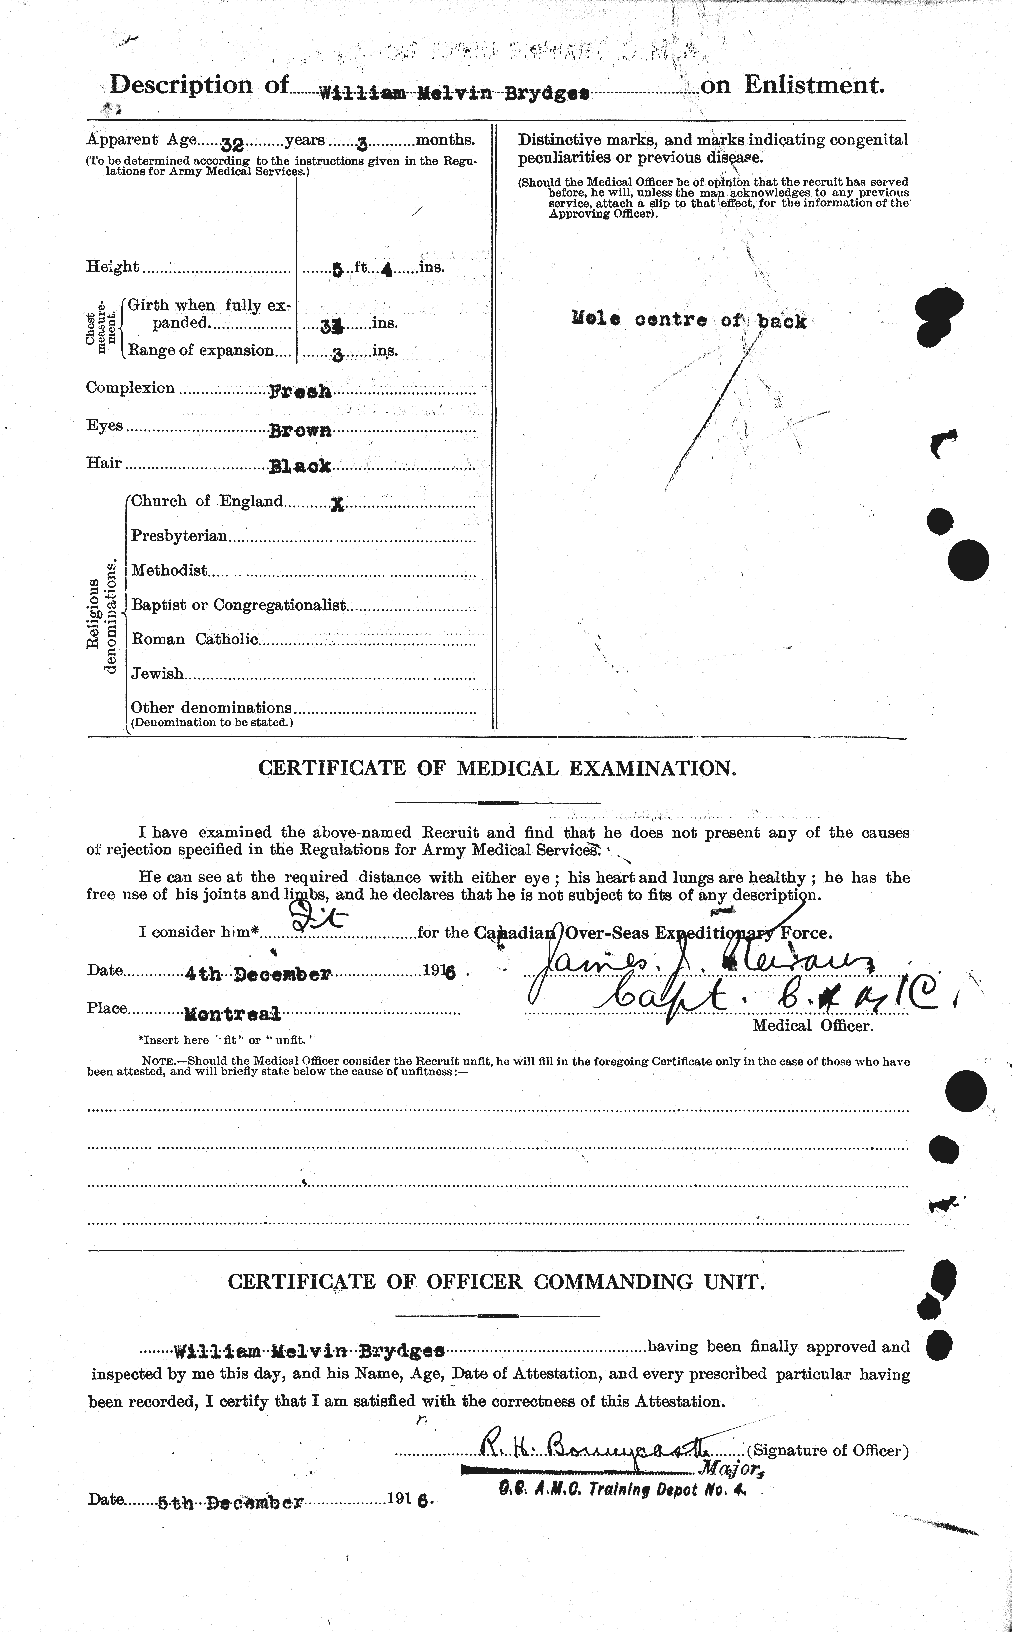 Dossiers du Personnel de la Première Guerre mondiale - CEC 268822b